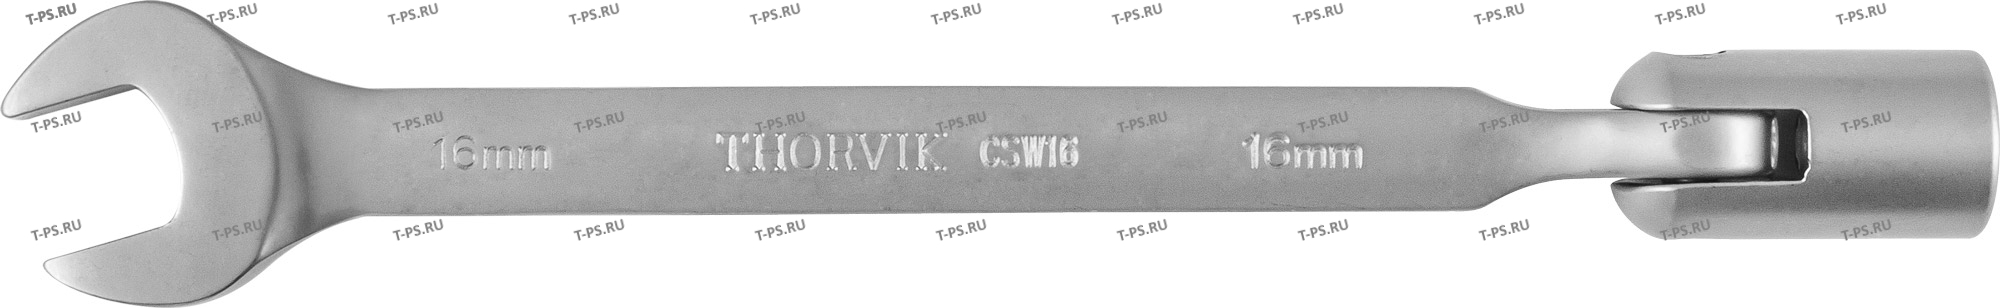 CSW16 Ключ гаечный комбинированный карданный, 16 мм